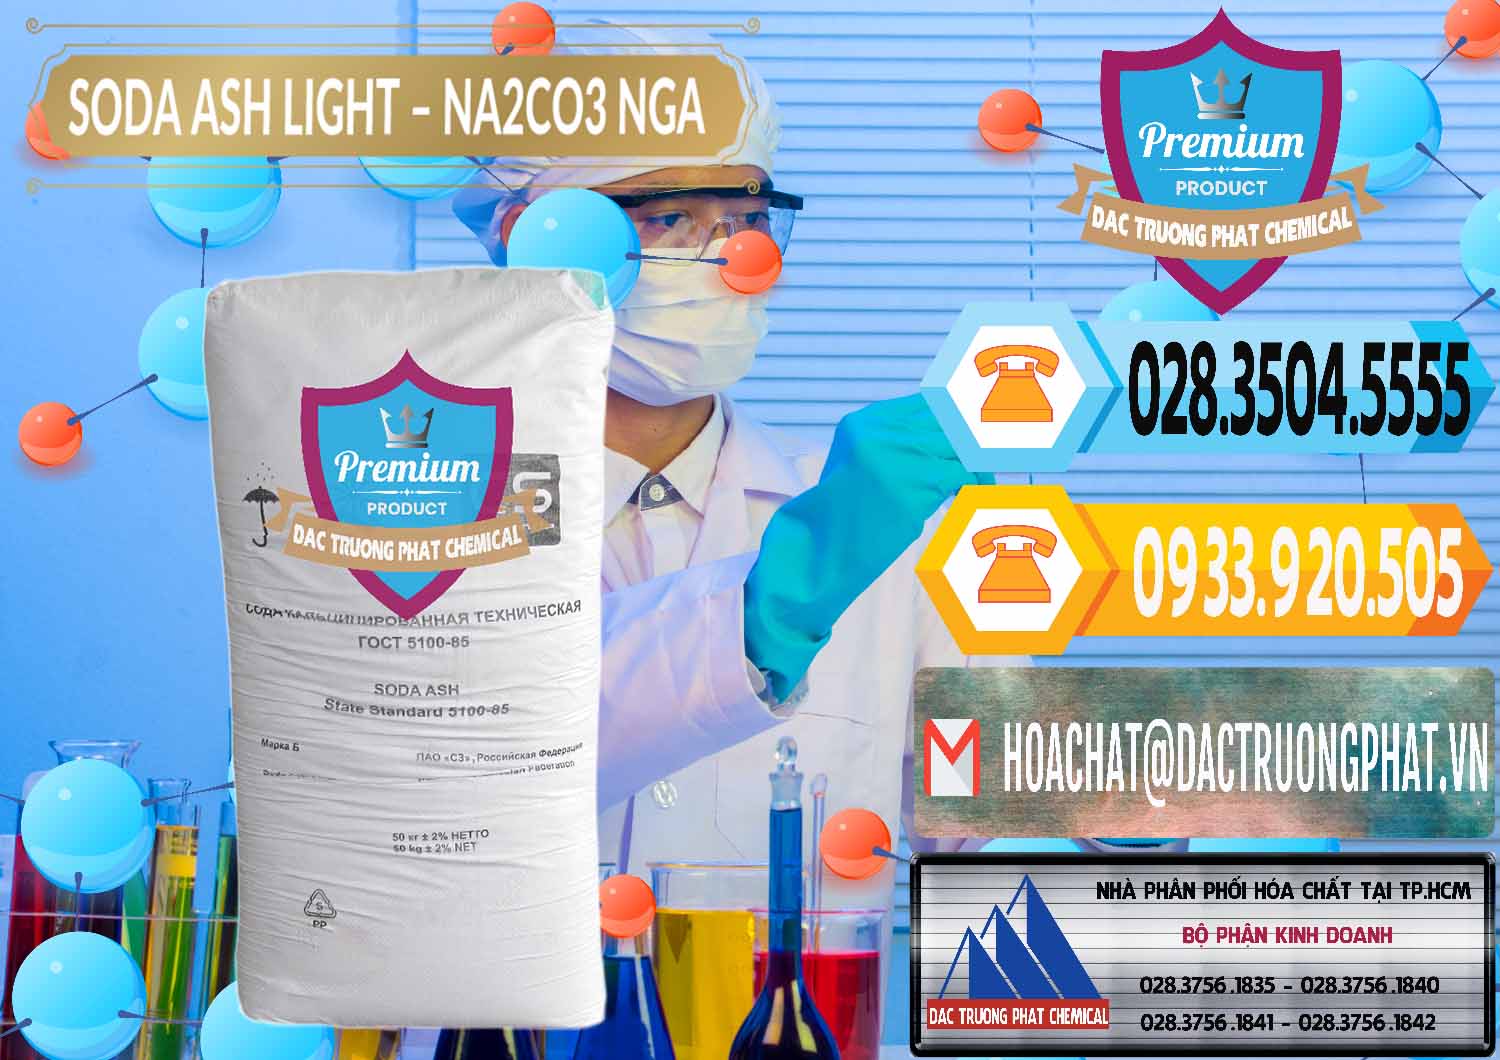 Nơi chuyên cung ứng & bán Soda Ash Light - NA2CO3 Nga Russia - 0128 - Nơi chuyên cung cấp & bán hóa chất tại TP.HCM - hoachattayrua.net